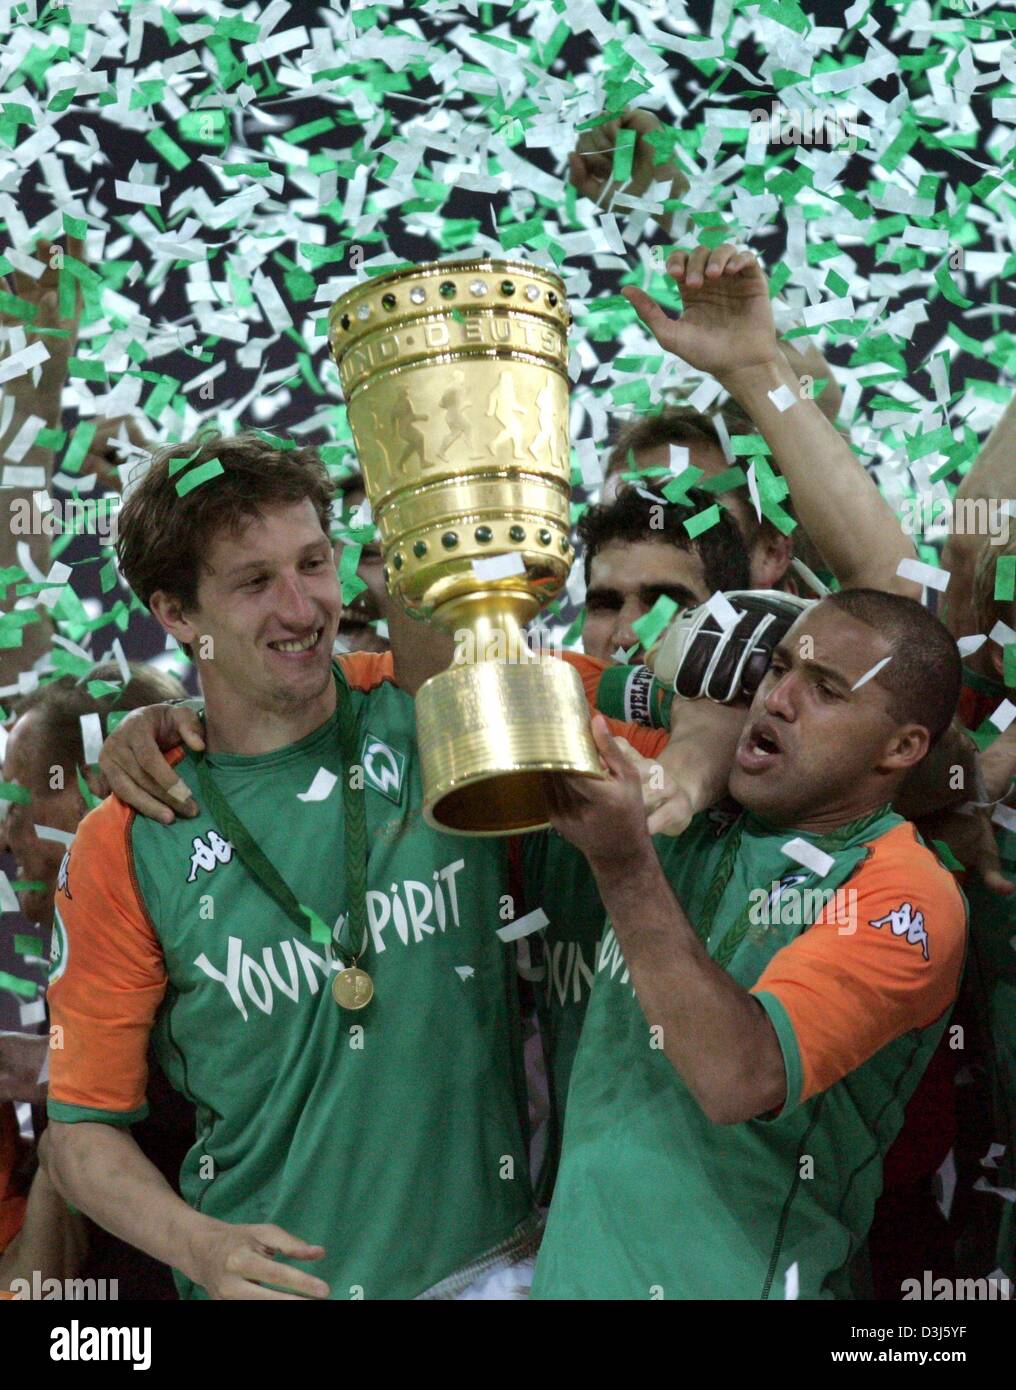 Dpa) - Bremen Kapitän Frank Baumann (L) und sein brasilianischer  Teamkollege Ailton (R) erhöhen den DFB-Pokal (deutscher Fußball Bund Cup)  vor ihren jubilierende Teamkollegen. Deutsche Liga Meister Werder Bremen  gewinnt die 61.